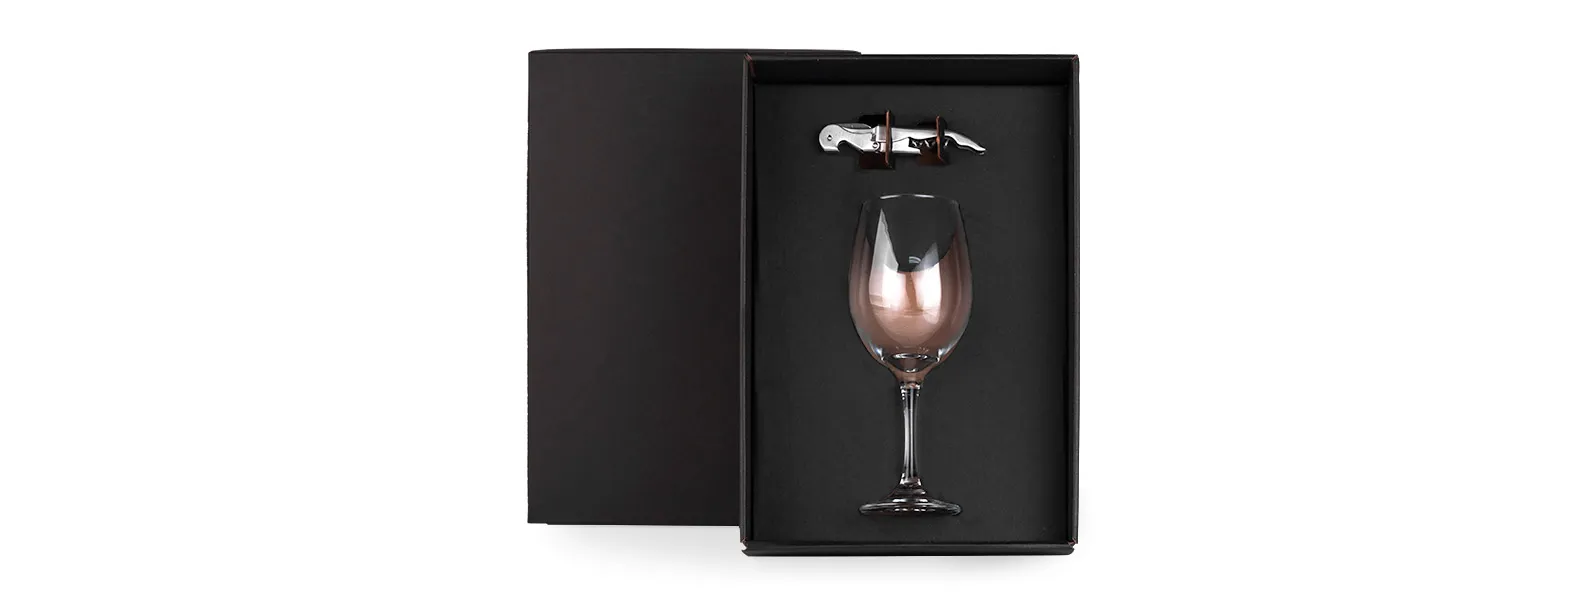 Kit vinho com abridor. Composto por uma taça de vidro para vinho com capacidade de 490ml e abridor saca-rolhas em aço inox escovado.